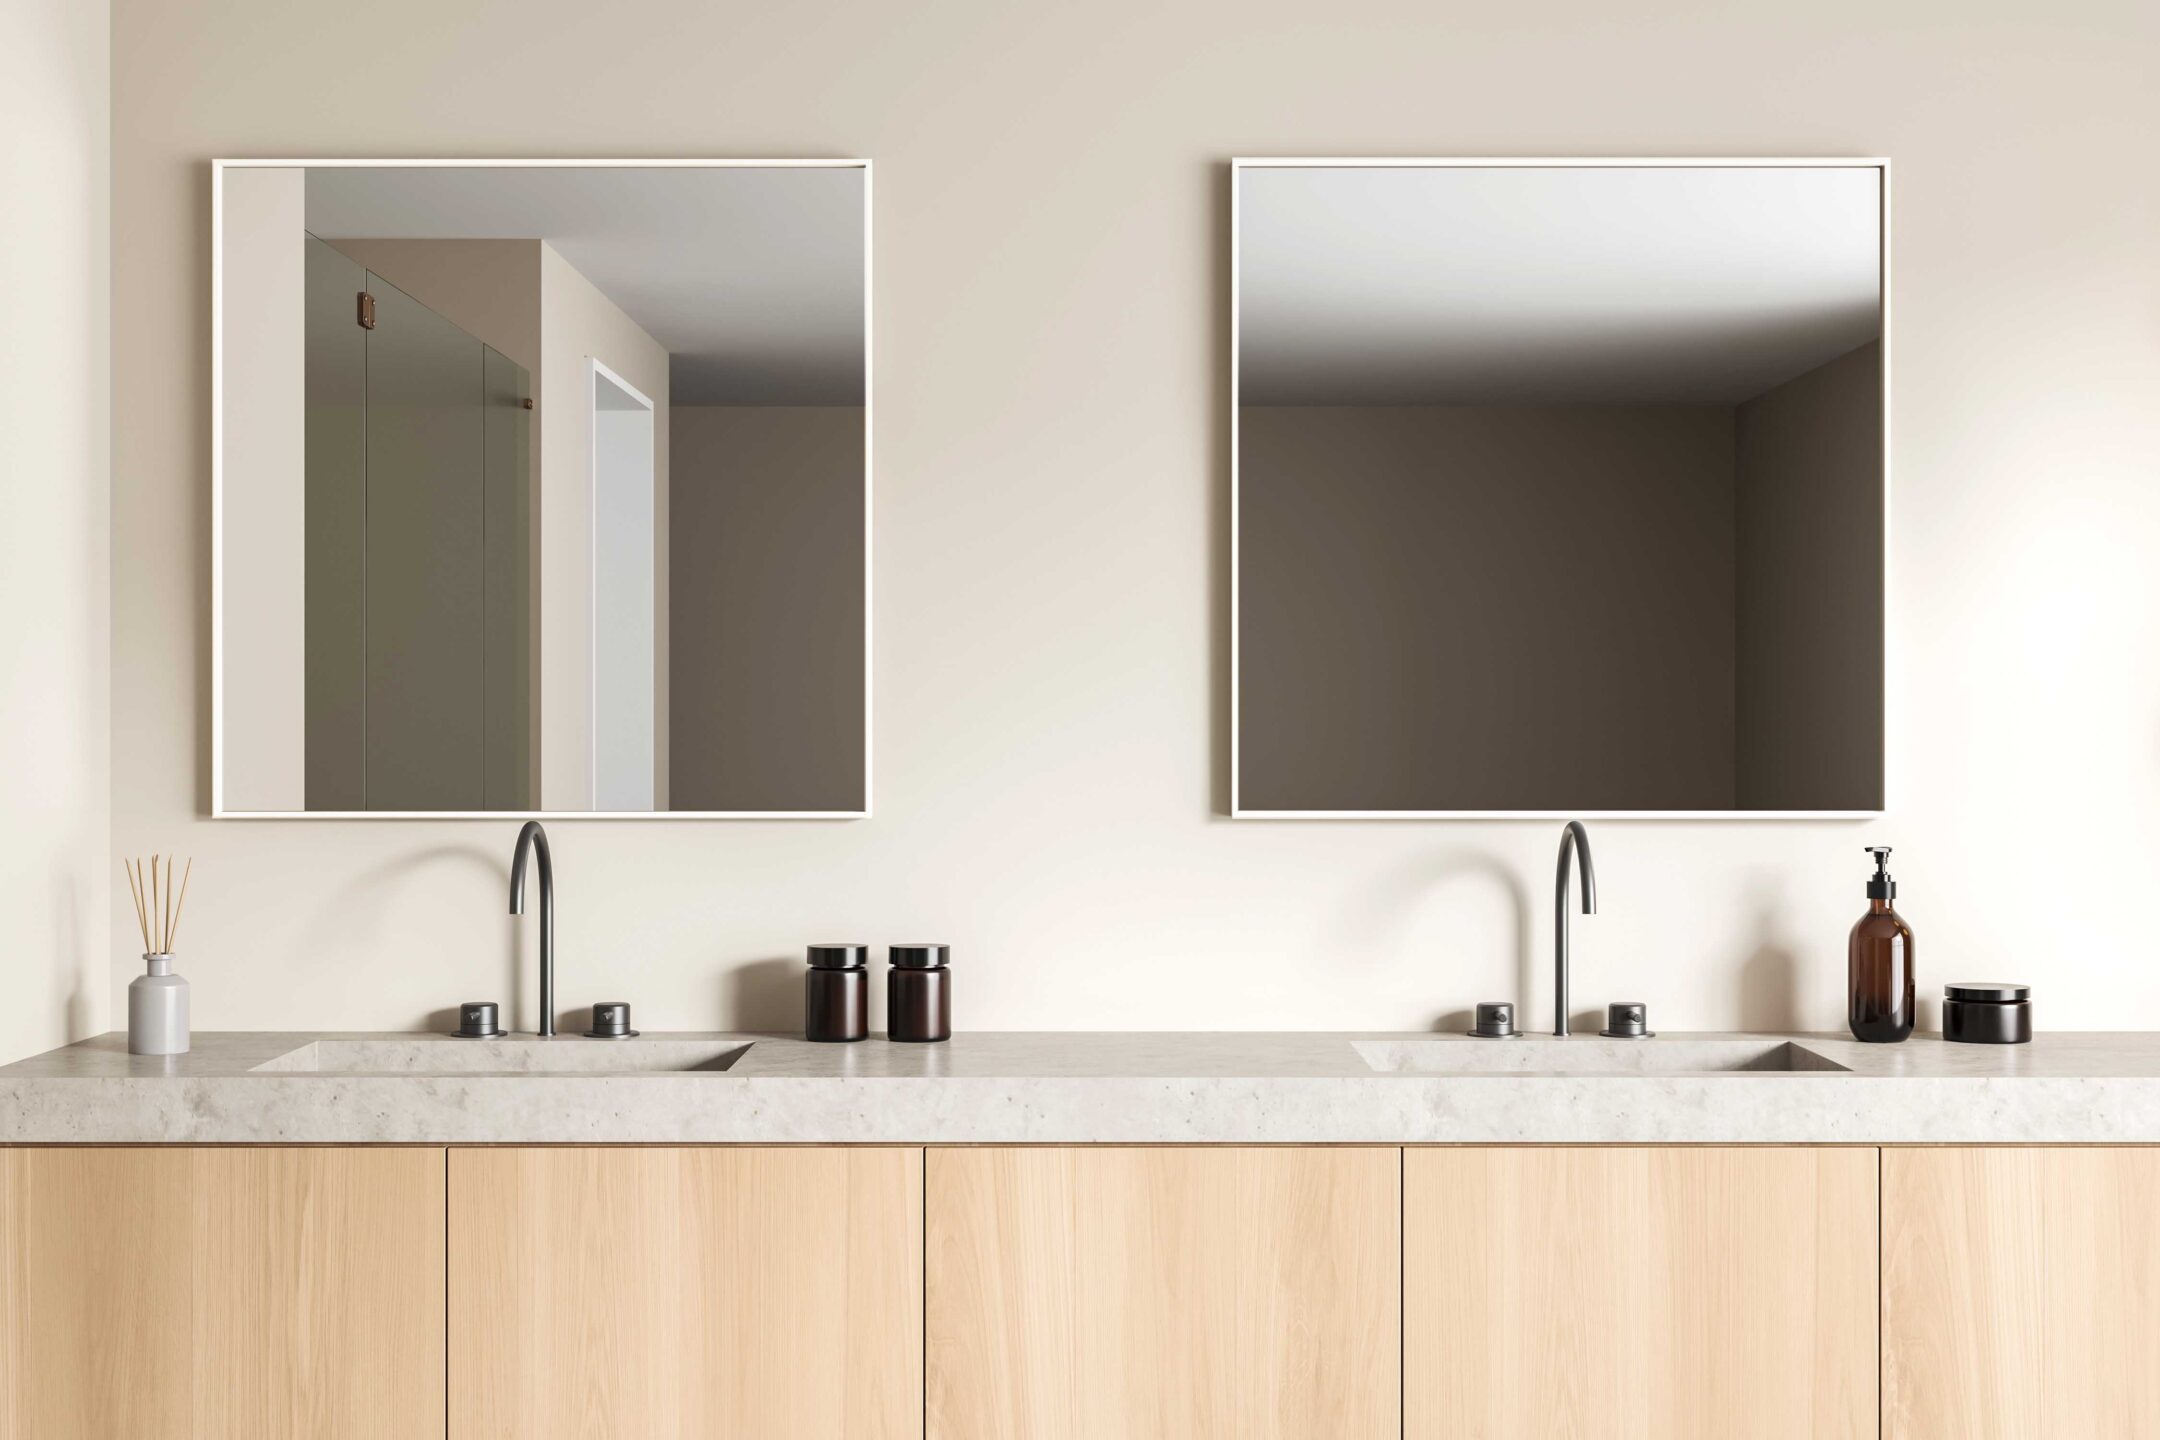 dwa kwadratowe lustra w bialej metalowej ramie w bezowej lazience nad umywalka